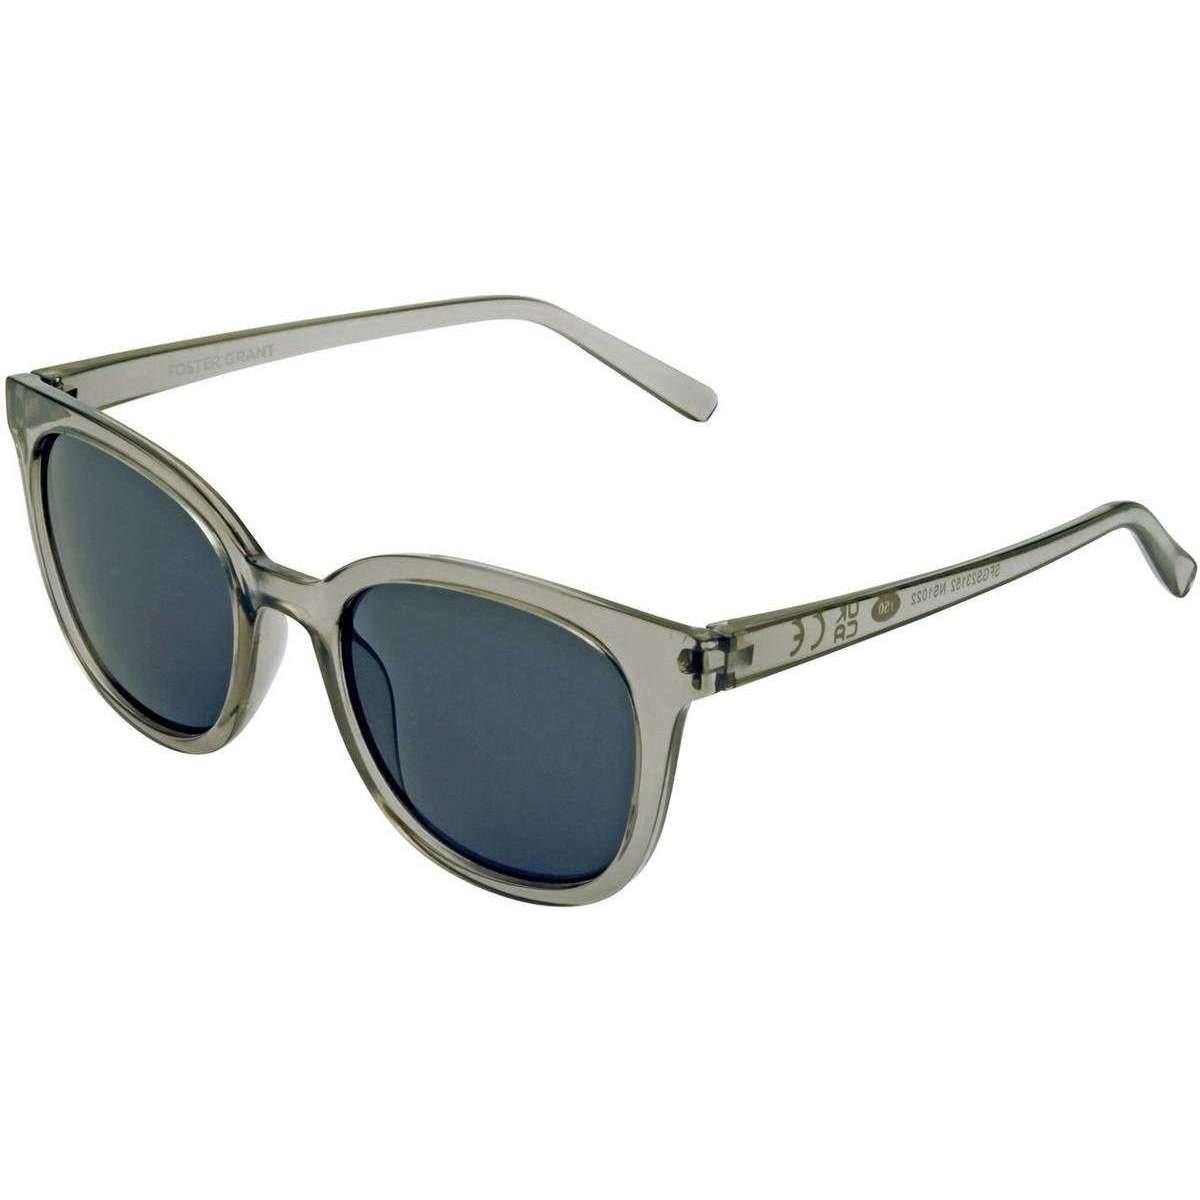 Foster Grant Grey Fashion Preppy Sunglasses